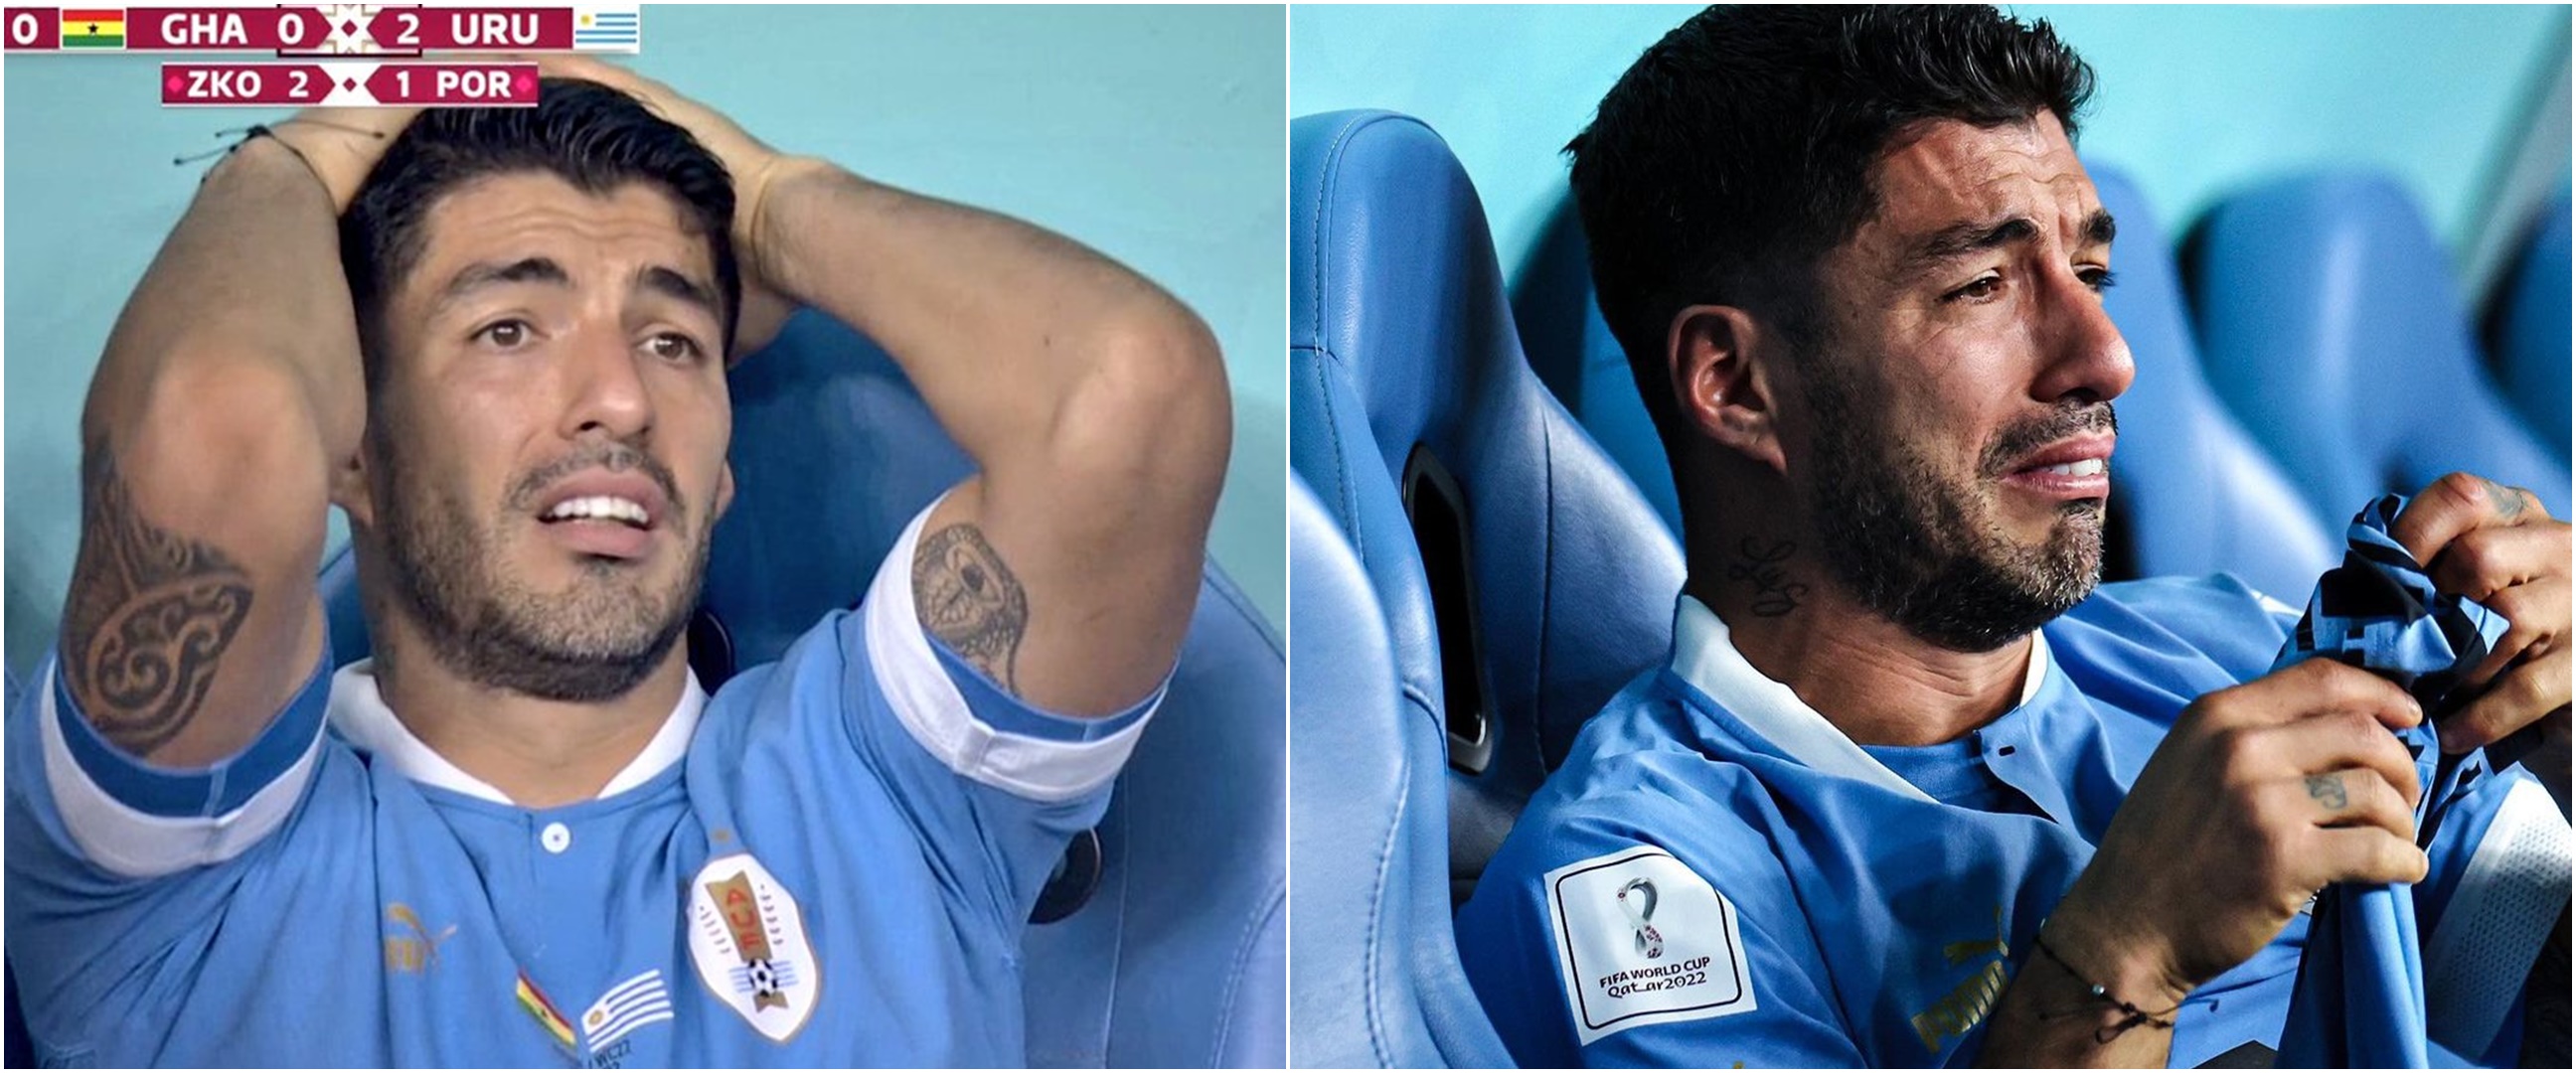 Tak kuasa menahan tangis, momen sedih Luis Suarez gugur lebih cepat di Piala Dunia terakhirnya